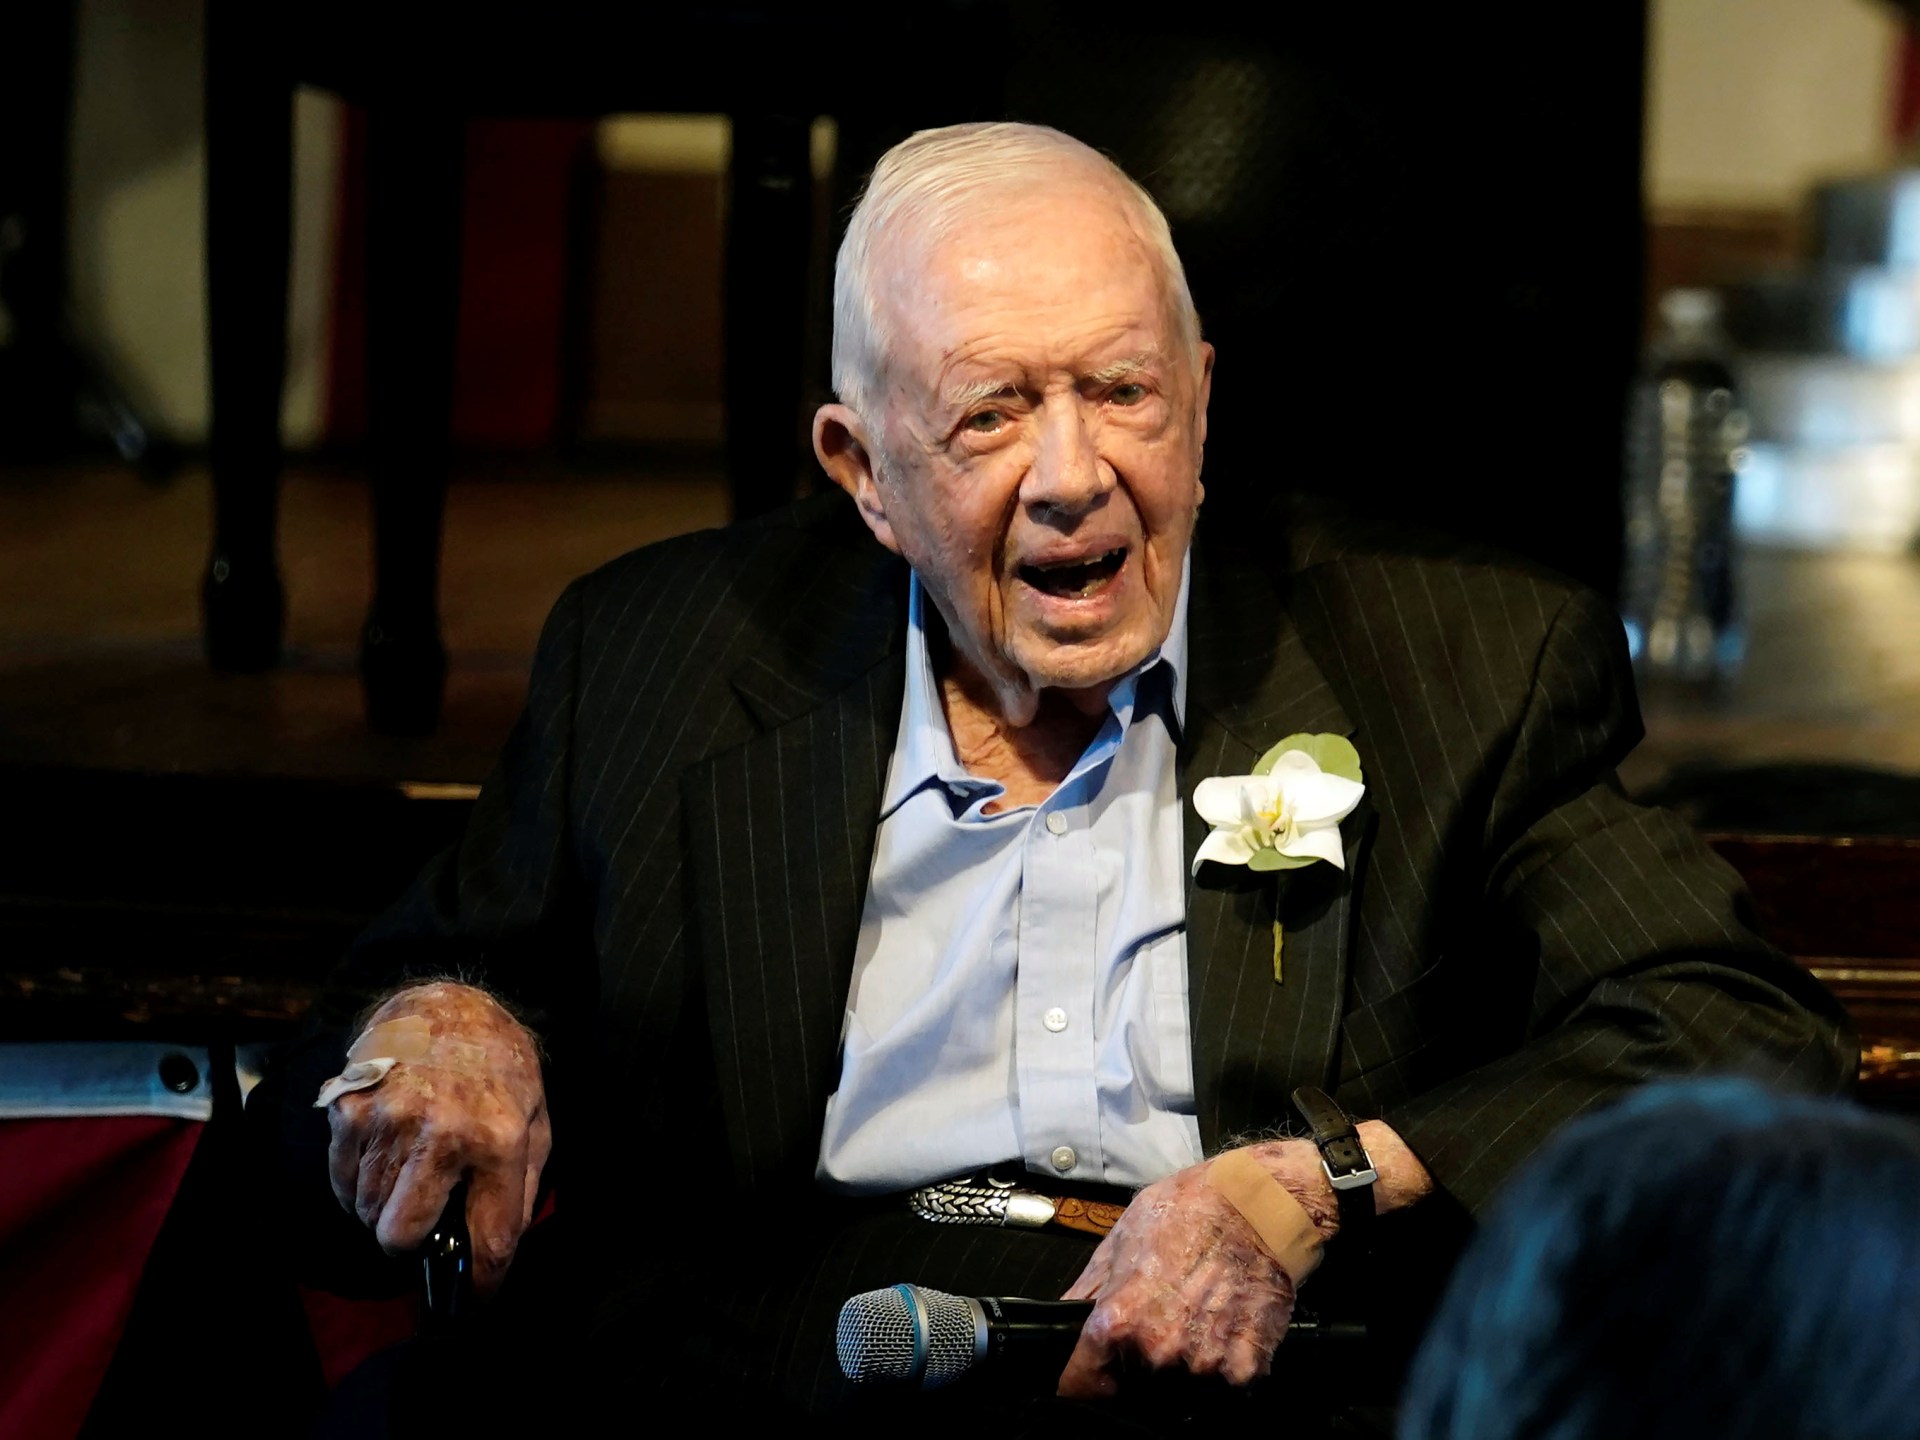 Jimmy Carter is not dead